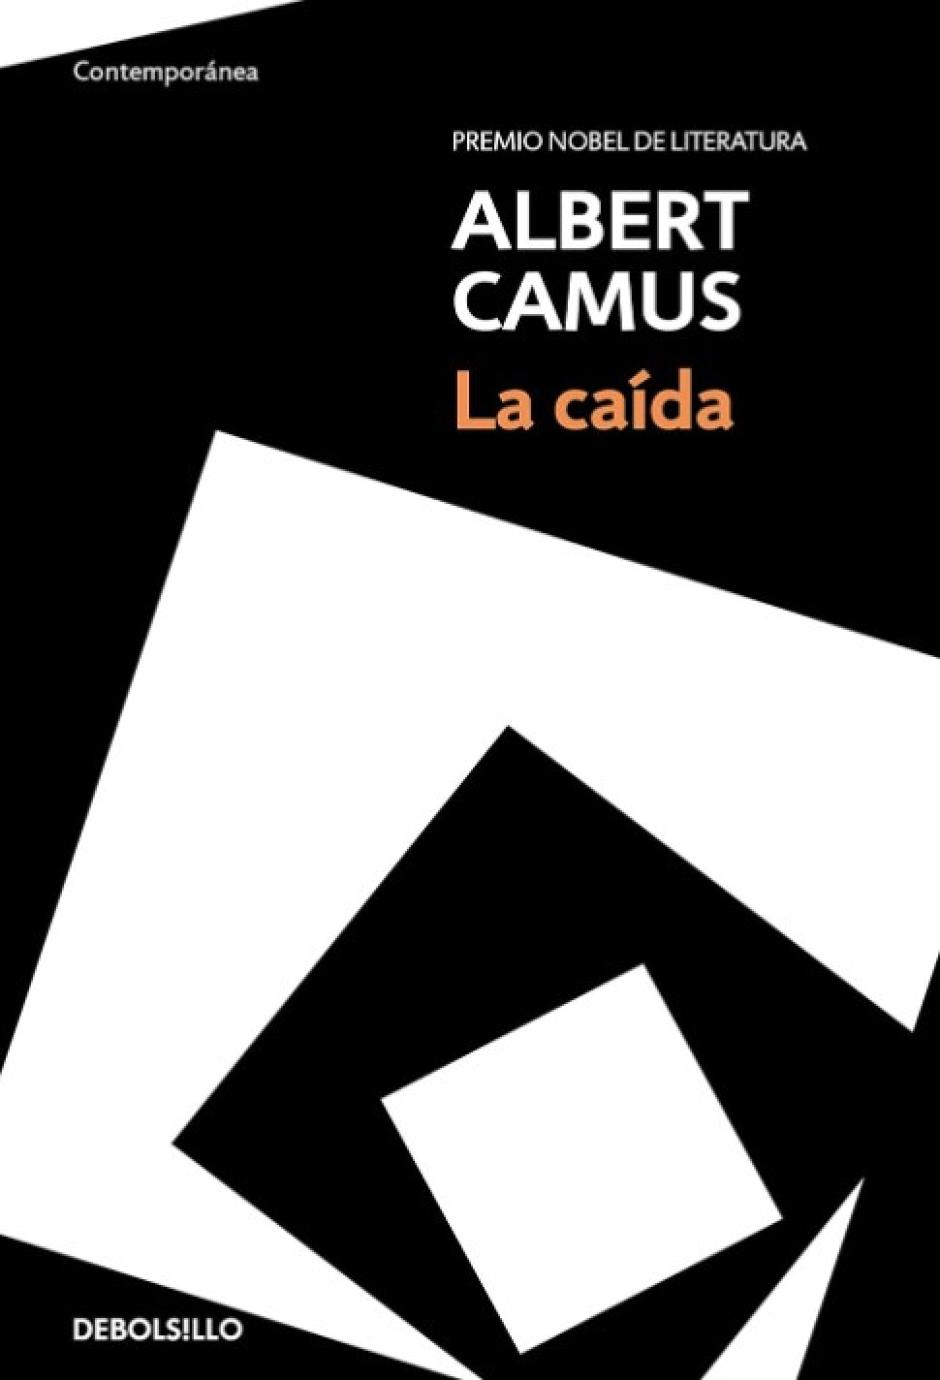 La caída (1956) de Albert Camus